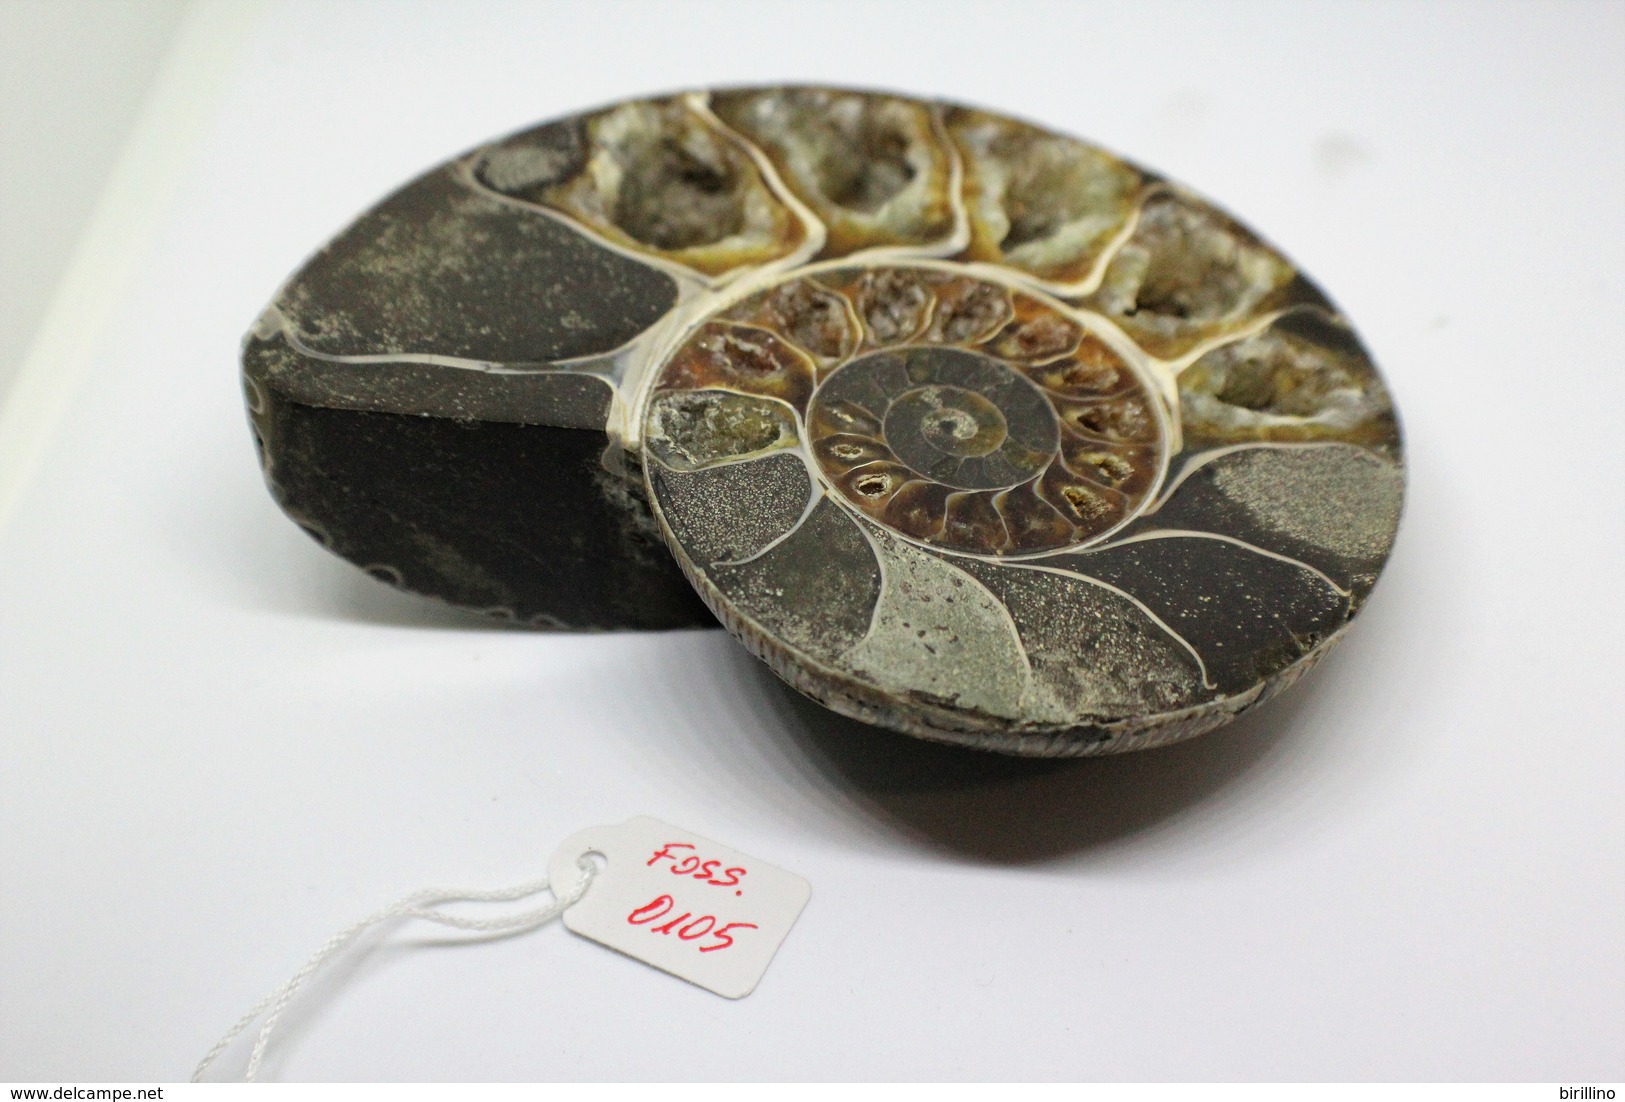 996 - Fossile Di Ammonite - Metà Di Fossile Di Conchiglia - Provenienza Madagascar Peso 371 Gr - Fósiles